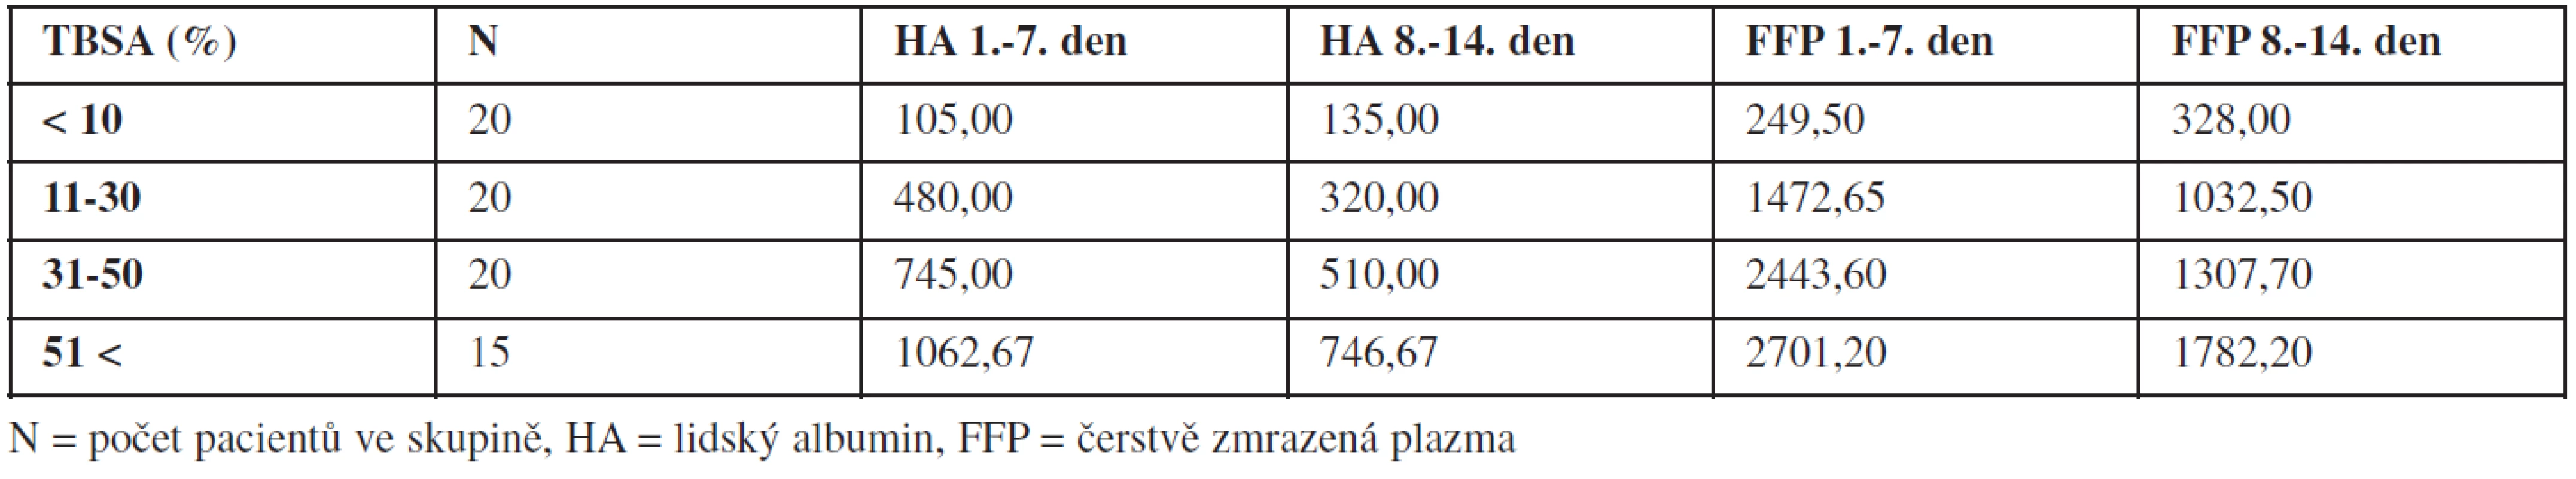 Hodnocení spotřeby přirozených koloidů (v mililitrech) podle rozsahu popálené plochy (TBSA).